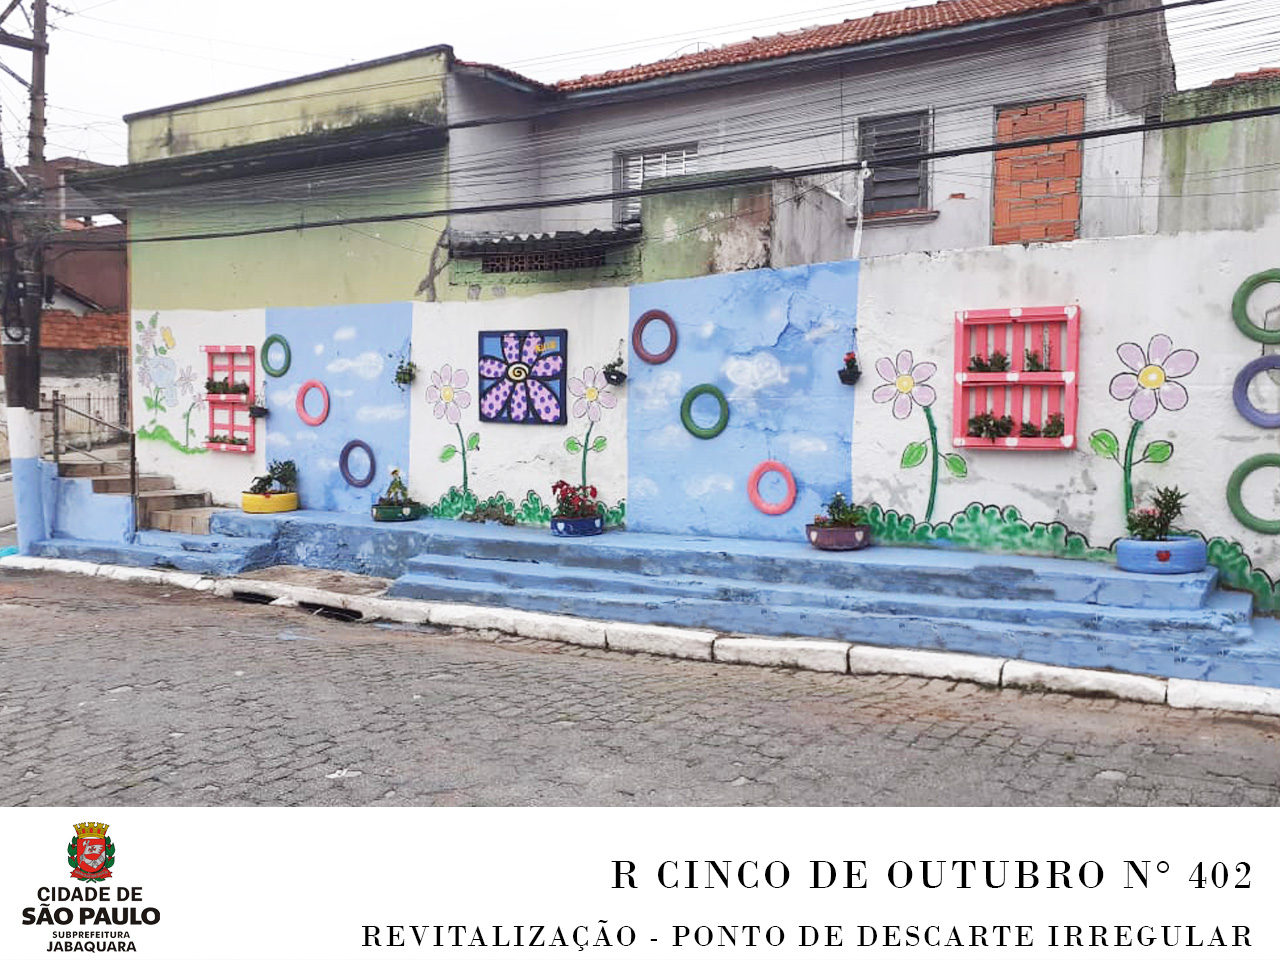 Local revitalizado pela Subprefeitura, contendo as cores azul e branco na parede, desenho de flores nas cores roxo e lilás, o local é um muro na na esquina da rua com 3 degraus. 